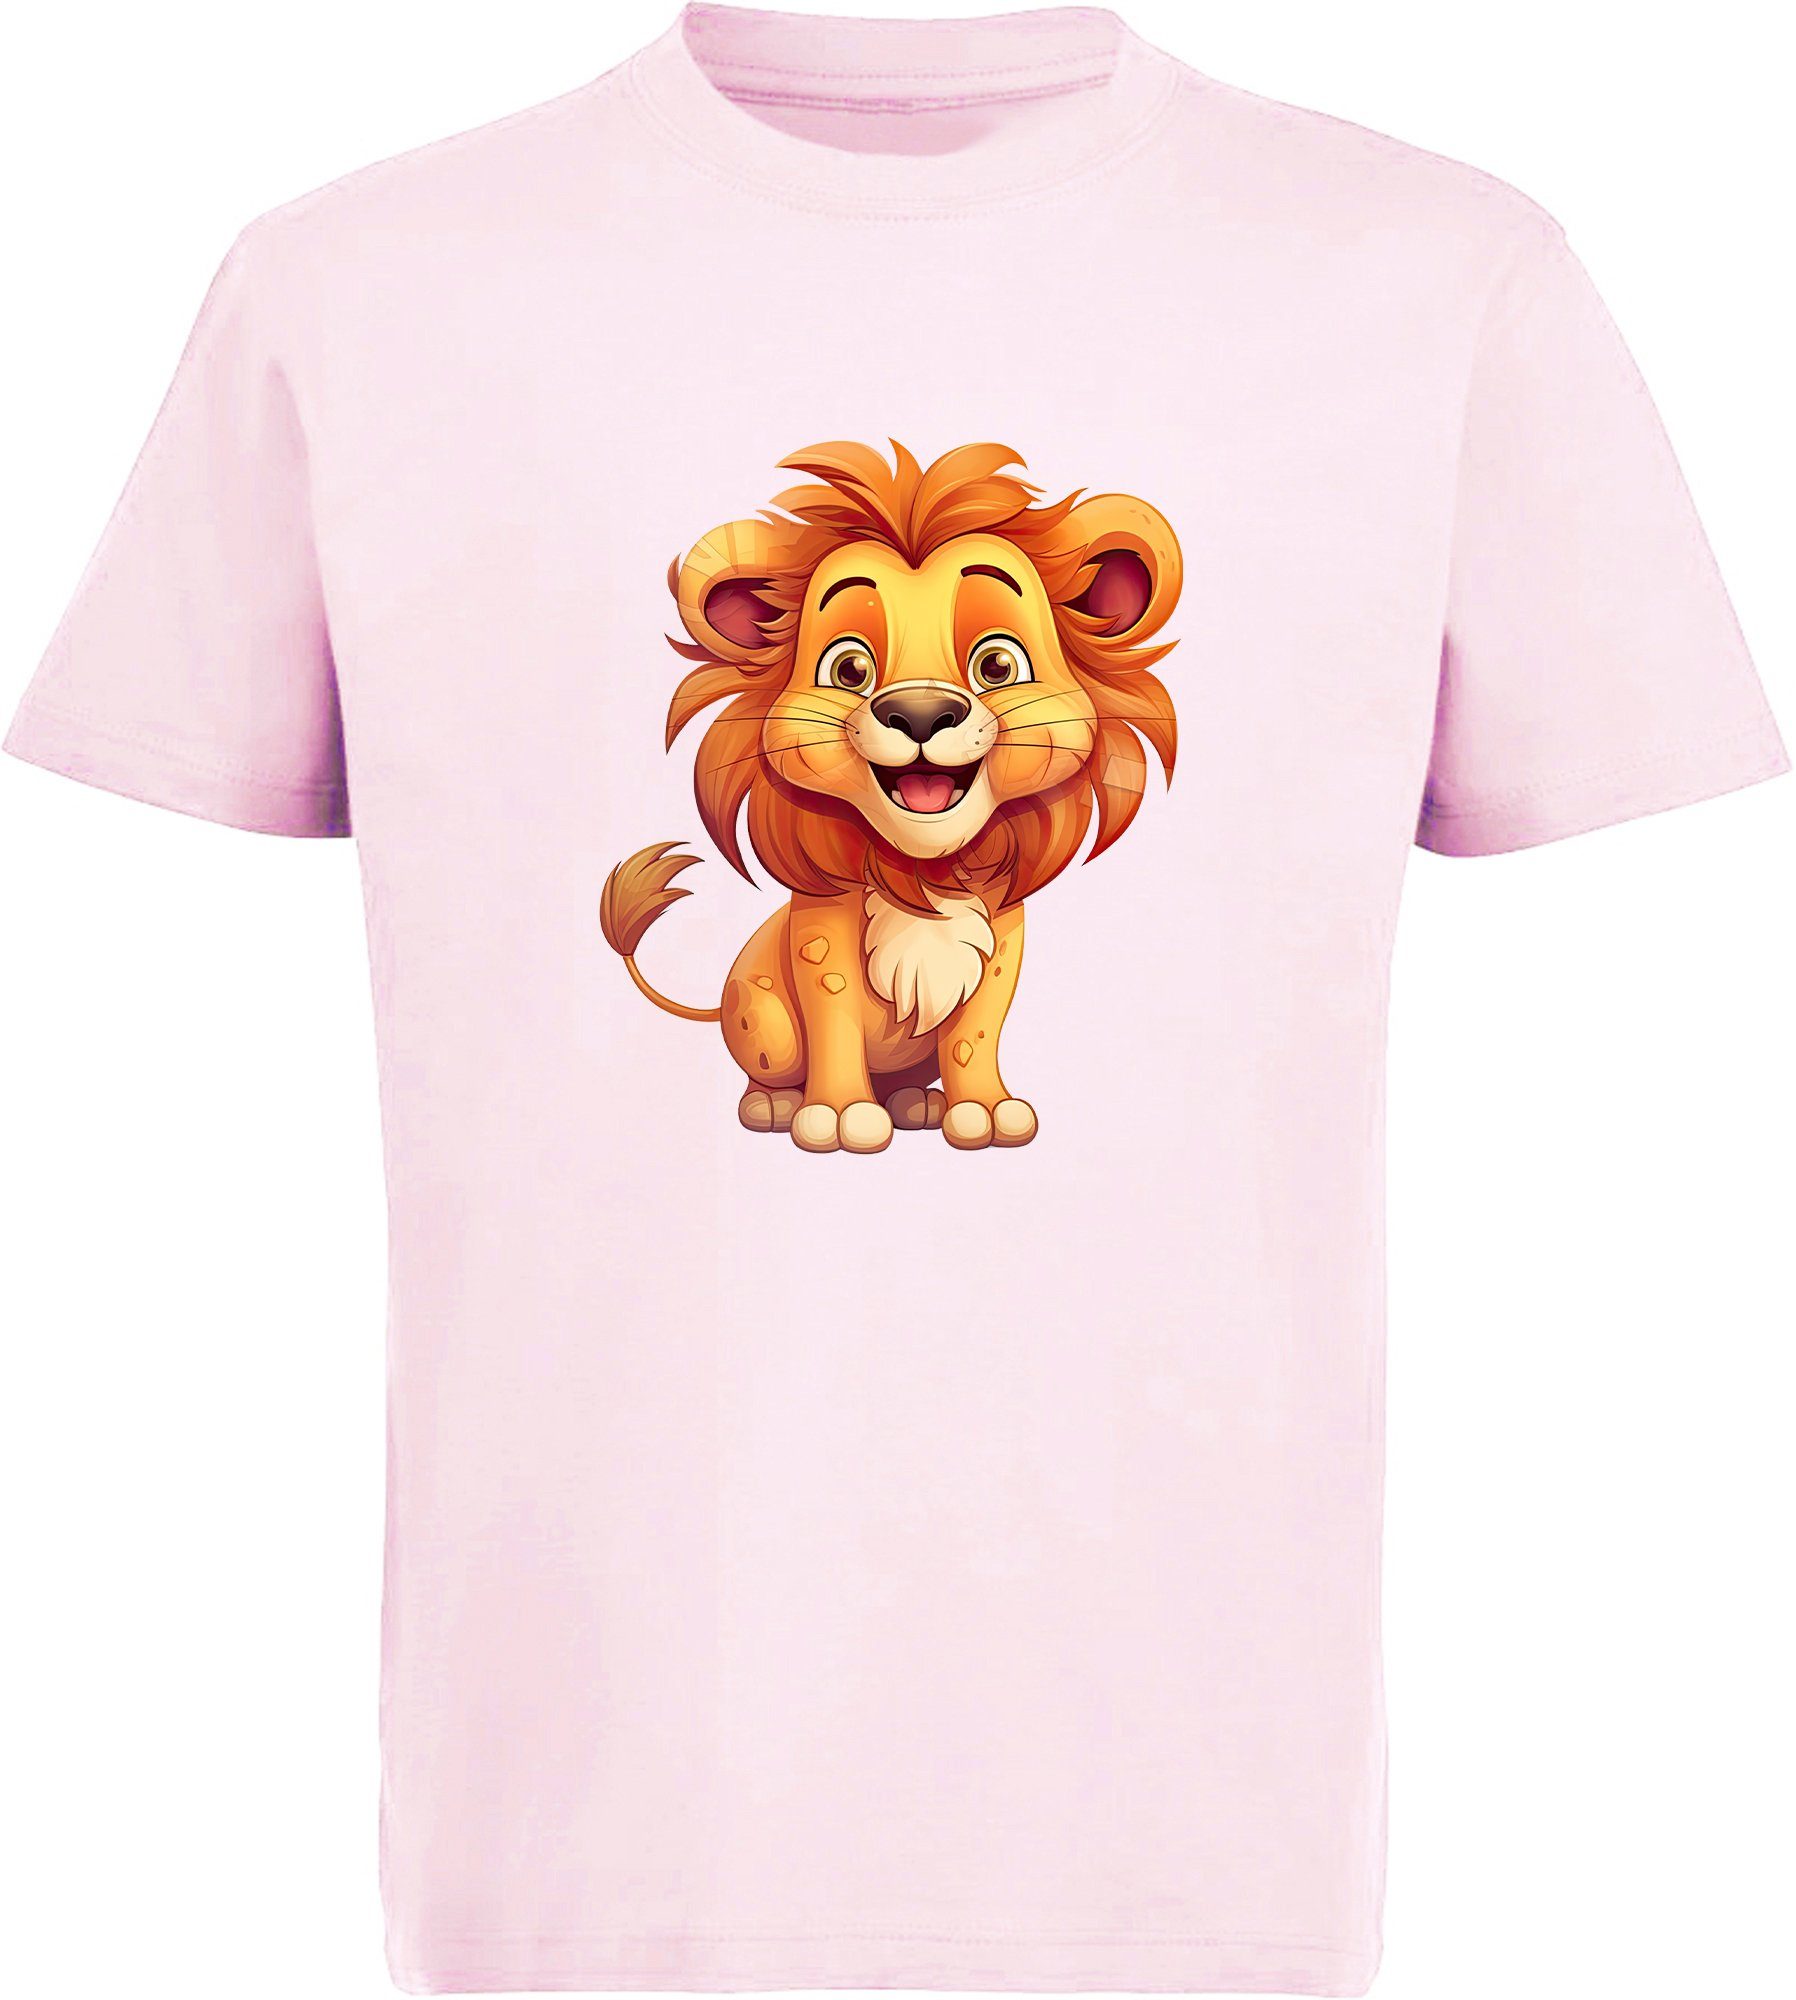 MyDesign24 T-Shirt Kinder Wildtier Print Shirt bedruckt - Baby Löwe Baumwollshirt mit Aufdruck, i275 rosa